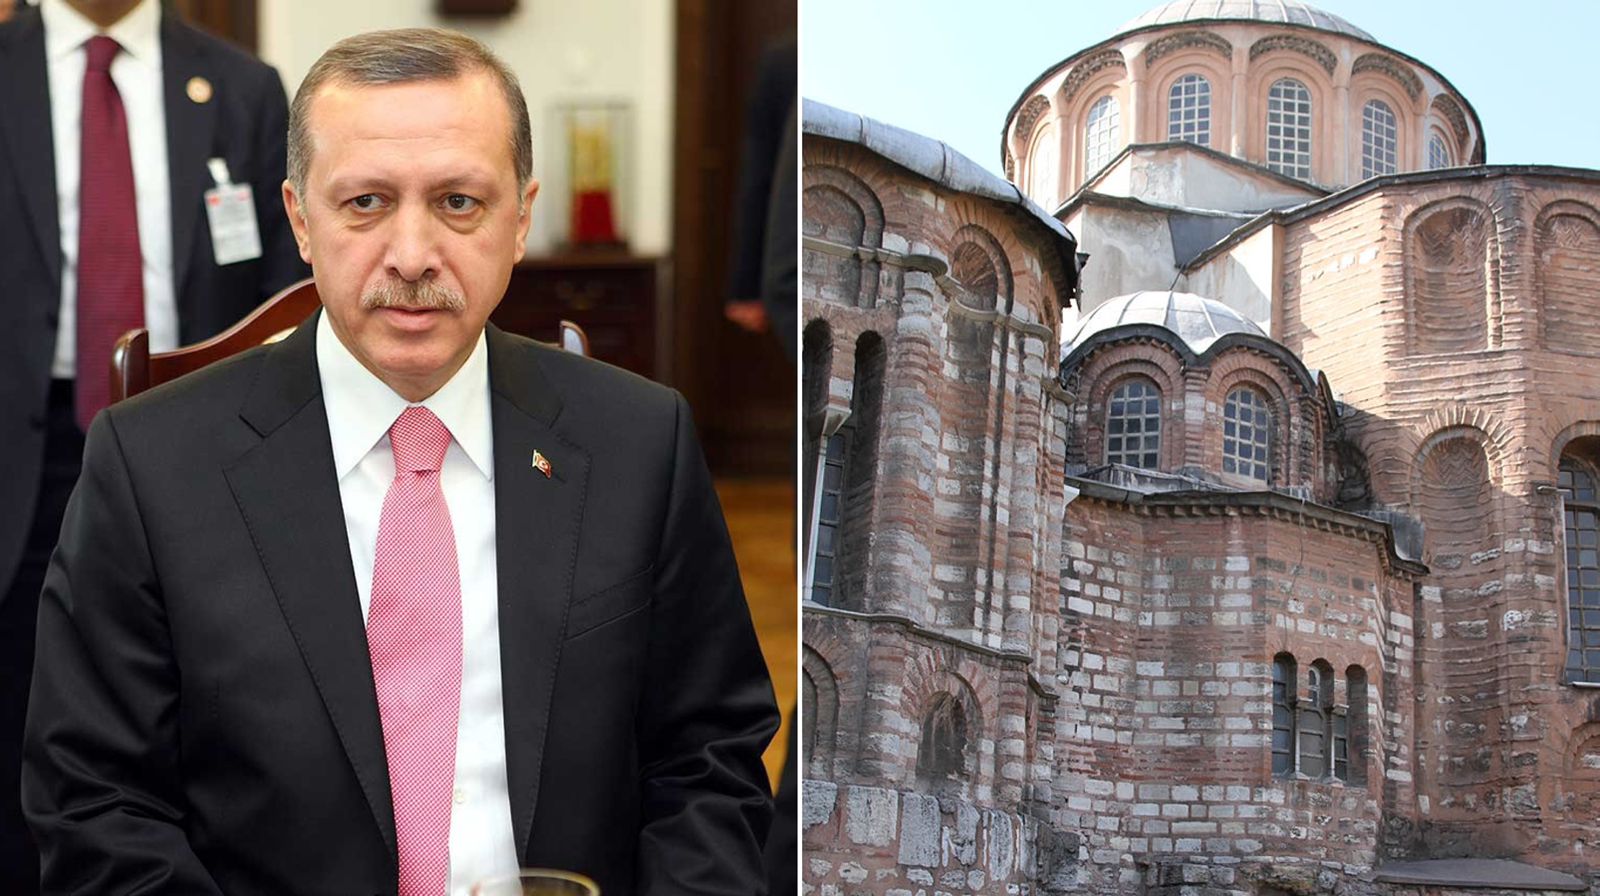 Com apoio do presidente, Turquia transforma igreja histórica em mesquita